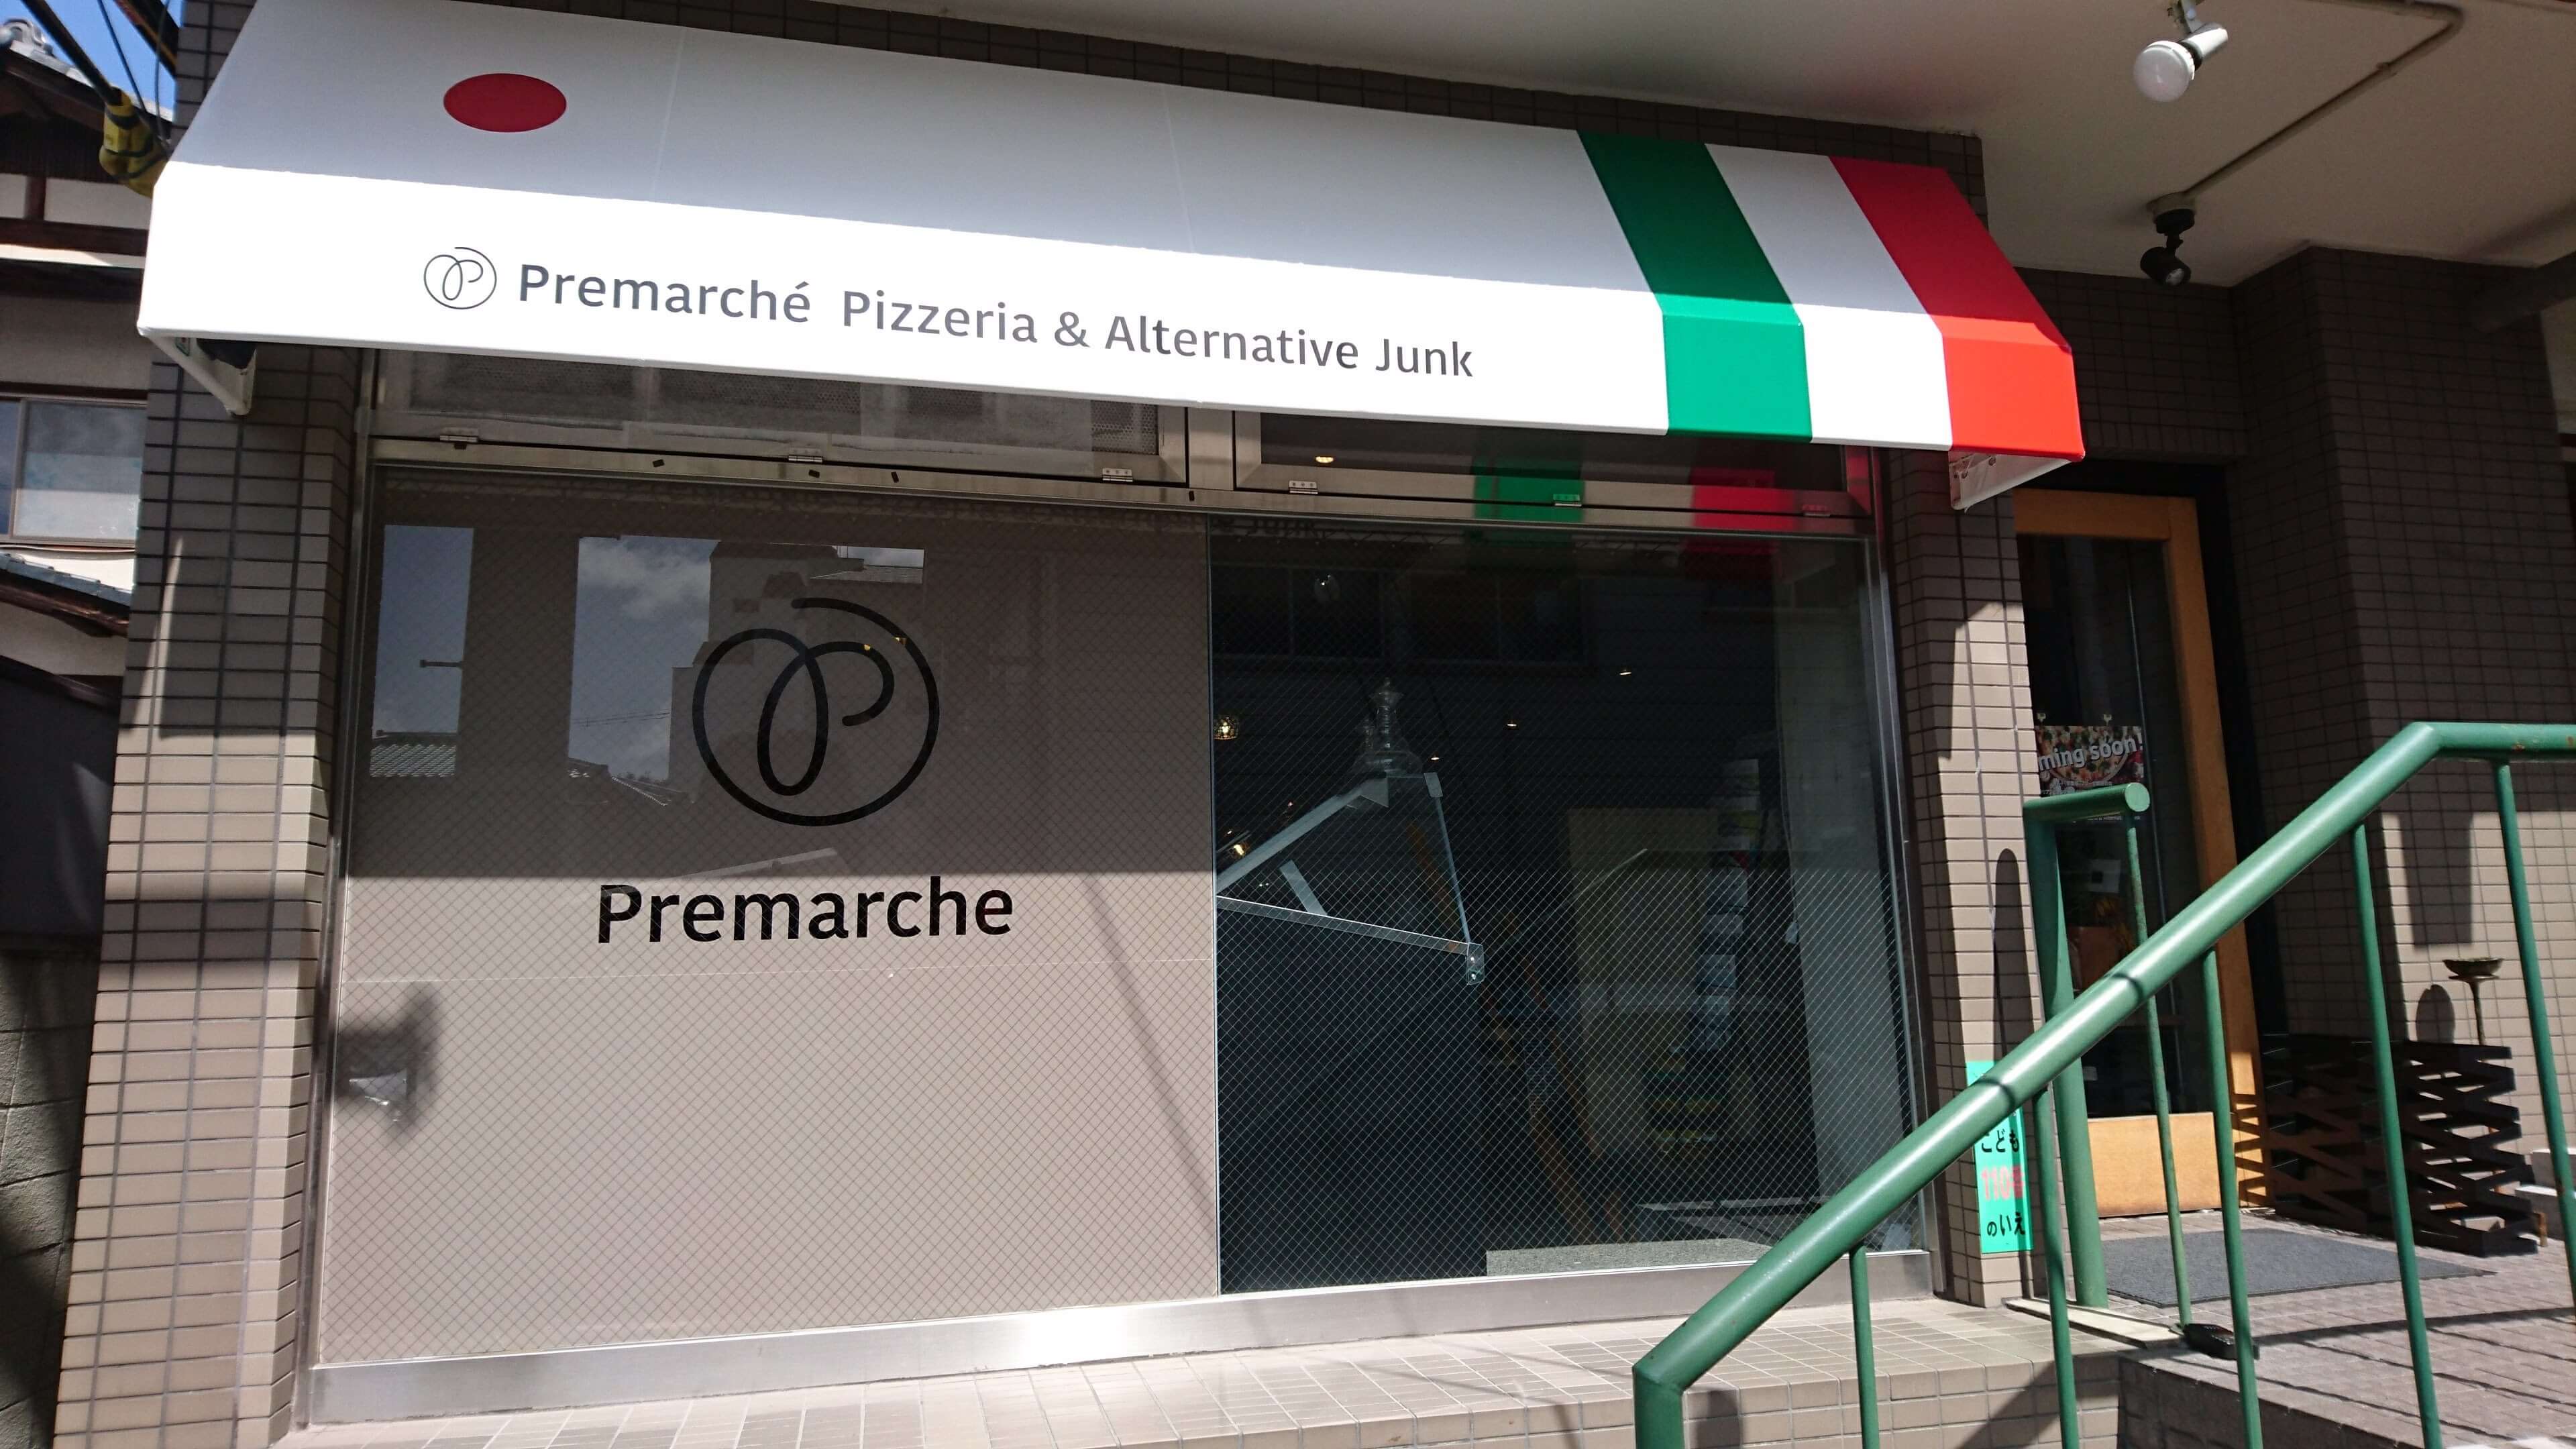 供應素食餐點的有機咖啡廳「Premarché Pizzeria & Alternative Junk(TM)」於京都・北山試營運開幕